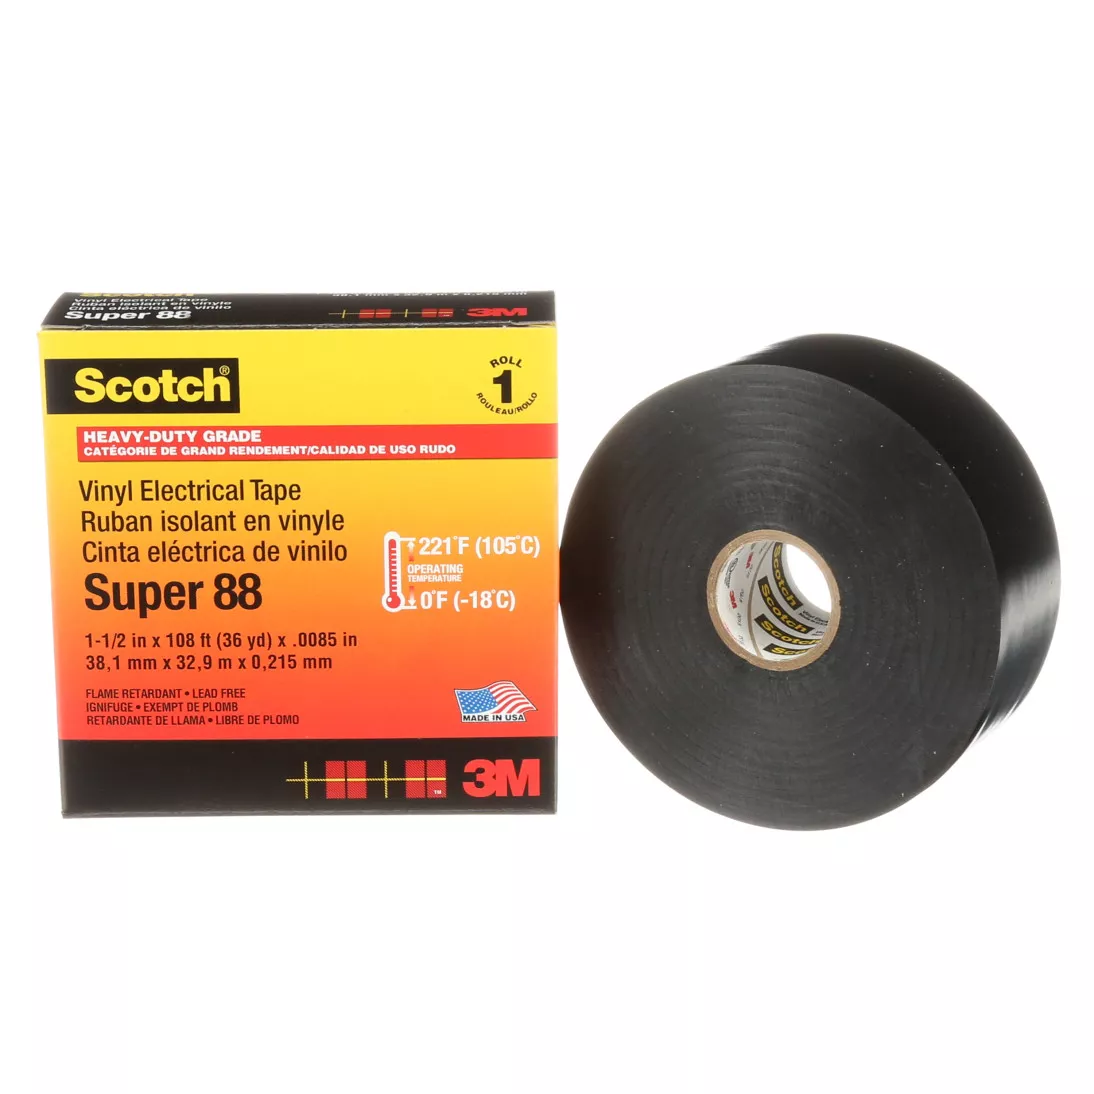 Scotch® Vinyl Electrical Tape Super 88, 1-1/2 in x 36 yd, Black, 12
rolls/Case